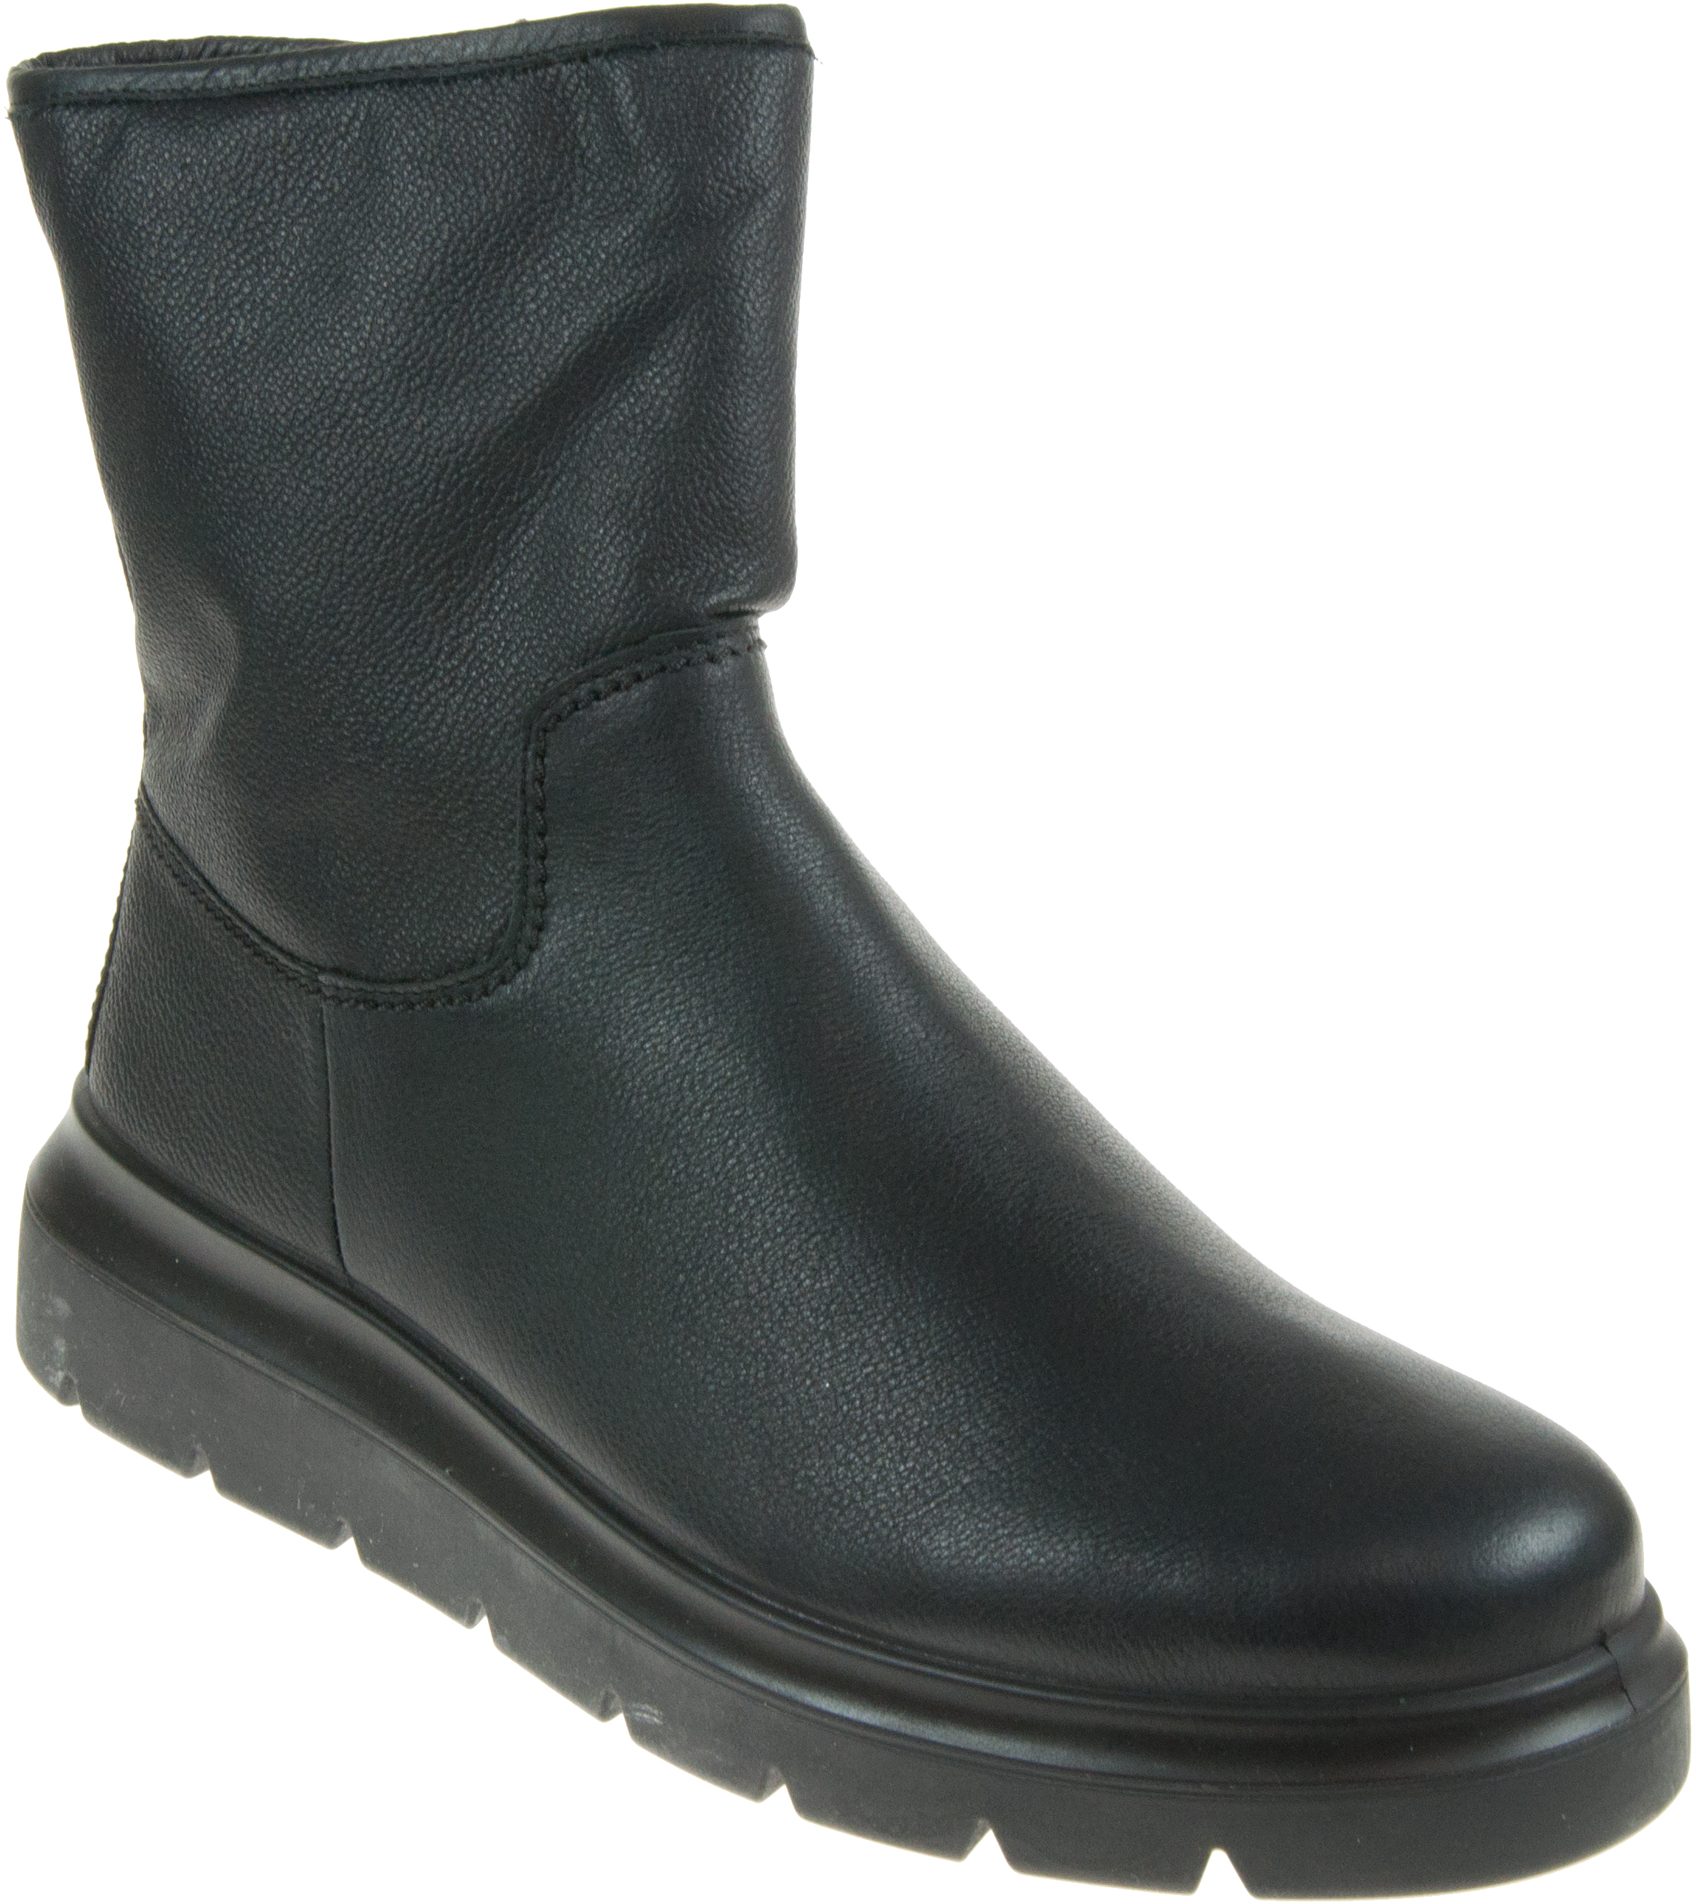 Ecco Nouvelle Mid-Cut Black 216243 01001 - Calf Boots